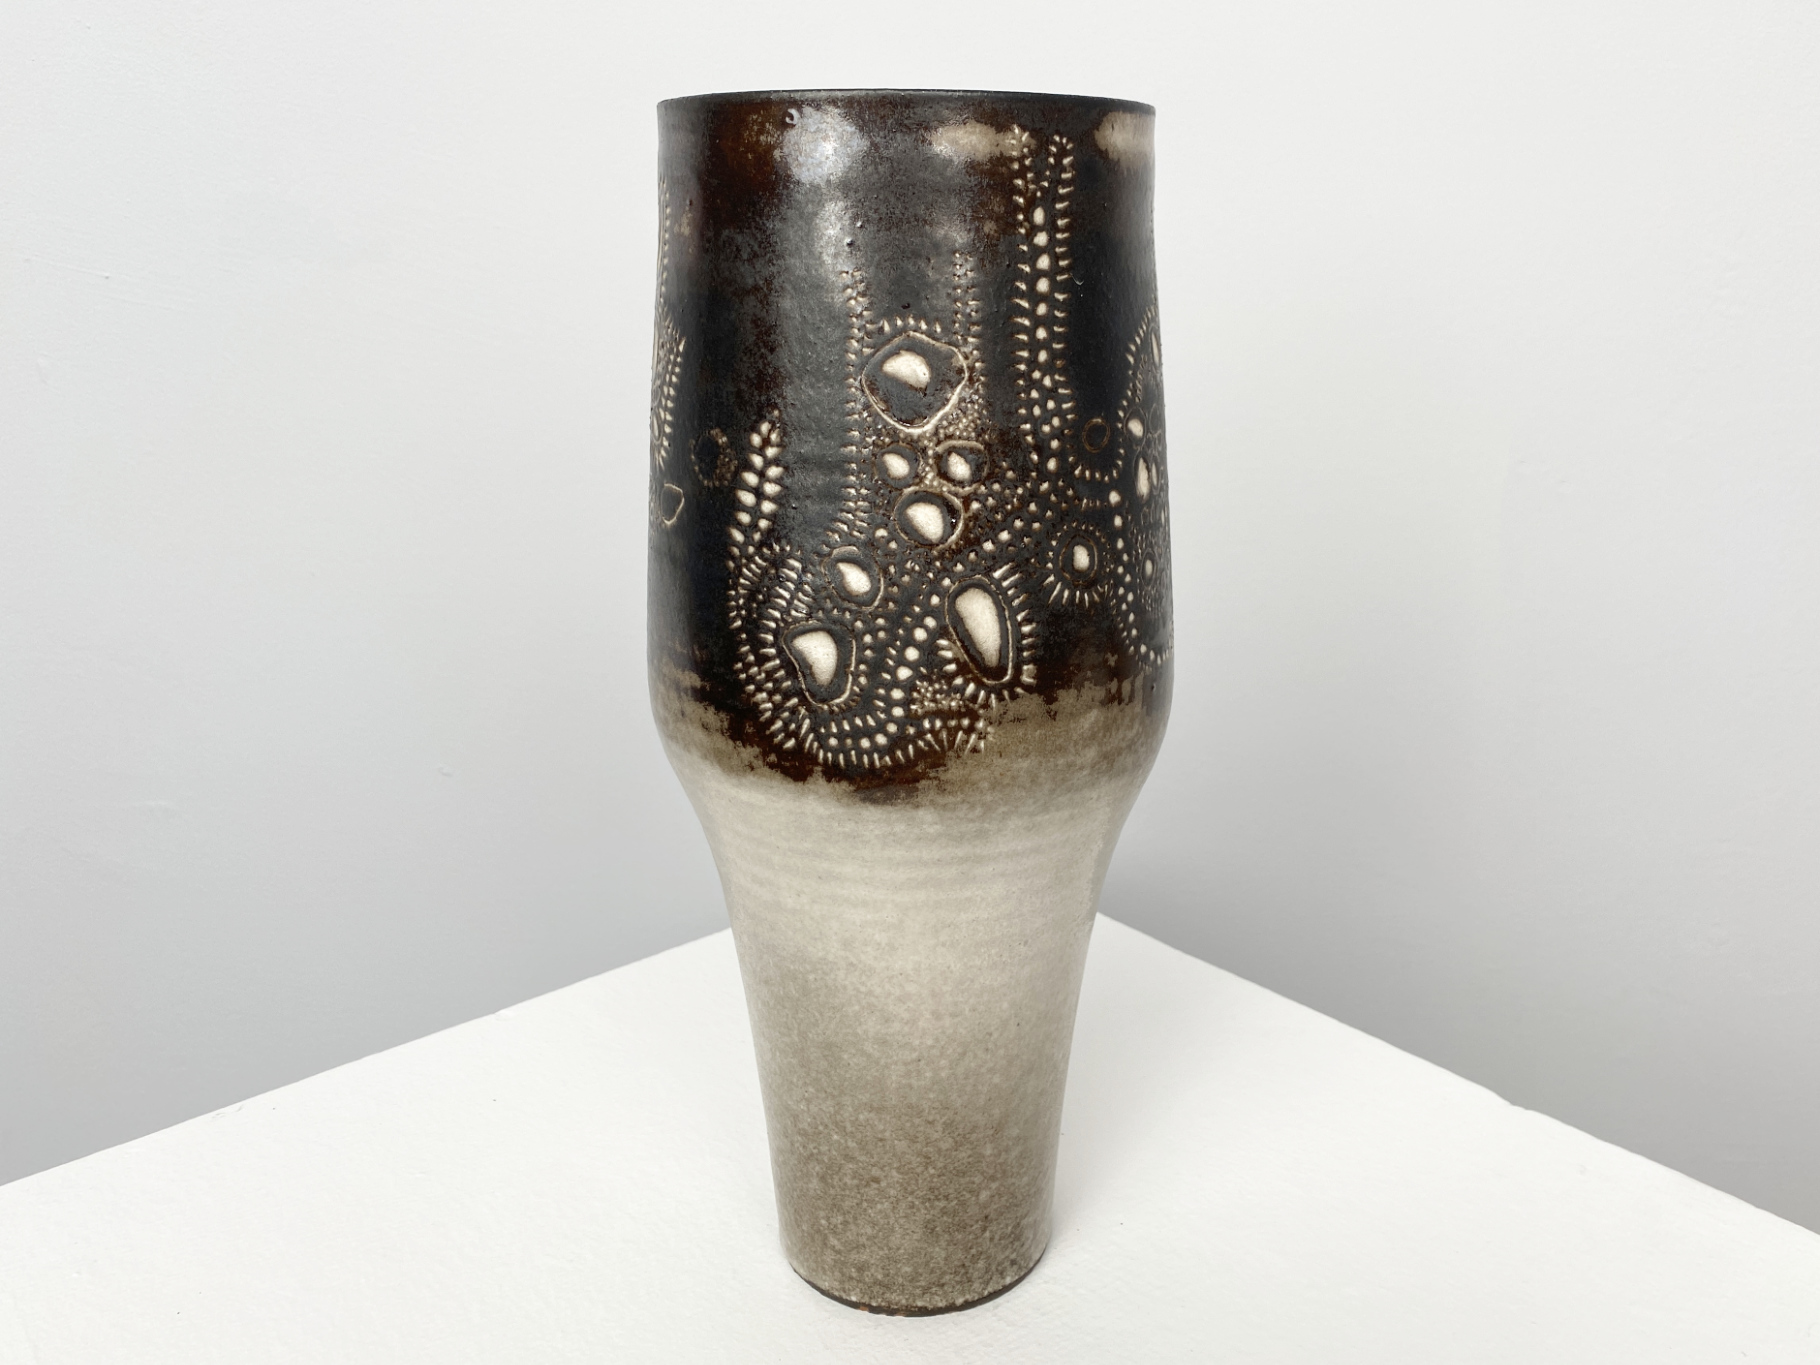 Vase, Keramik, Irdenware, gedreht, Ritztechnik mit Weißglasur, 1965